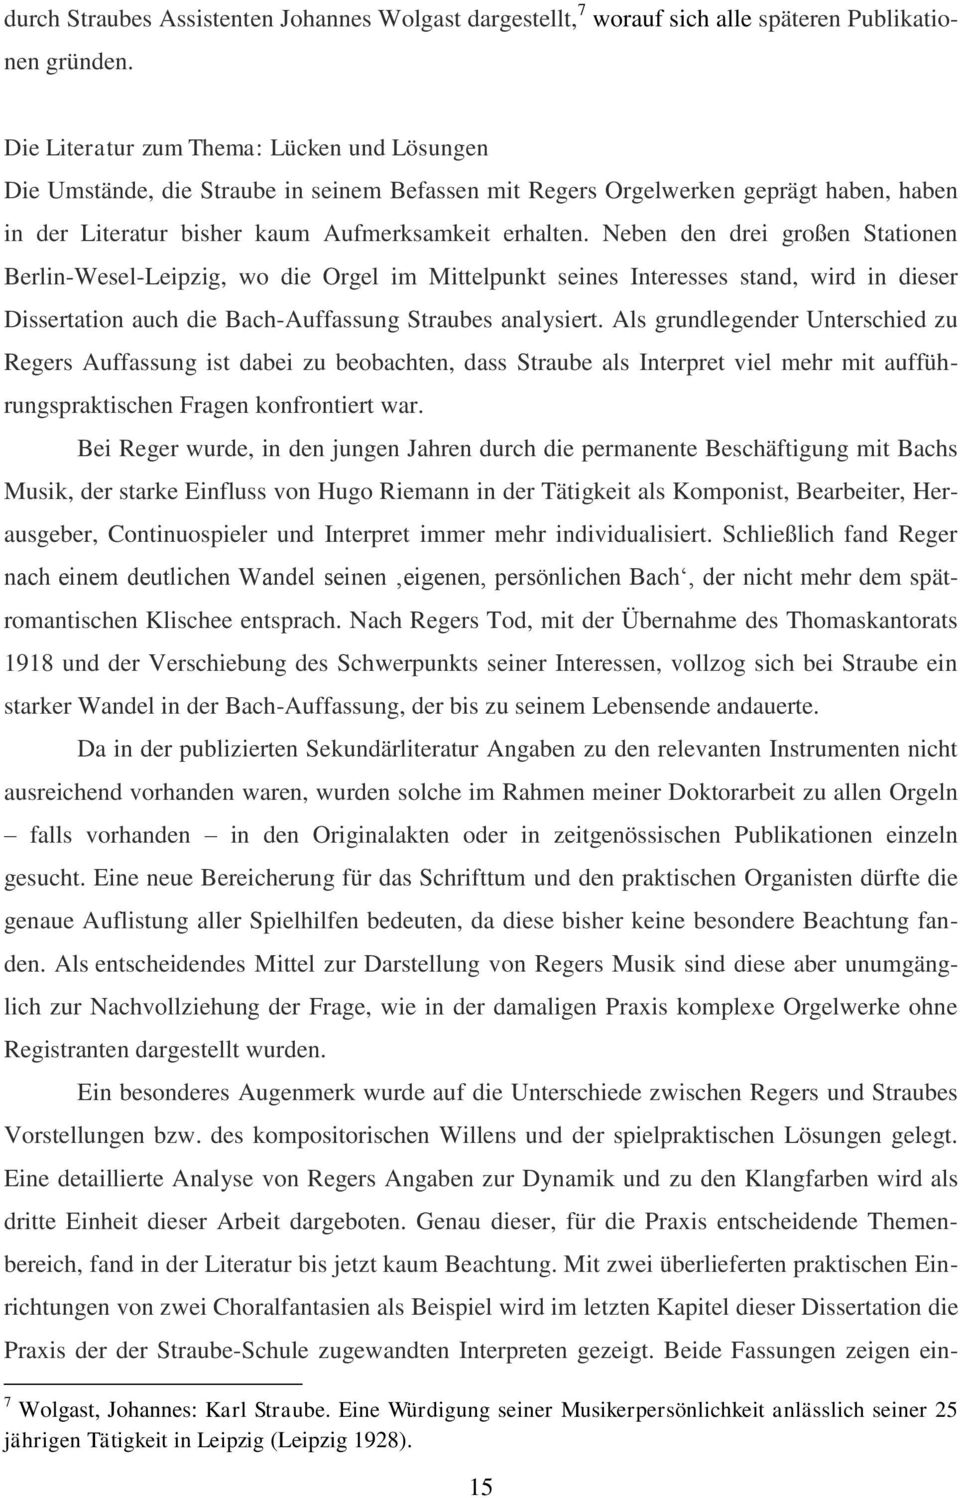 Neben den drei großen Stationen Berlin-Wesel-Leipzig, wo die Orgel im Mittelpunkt seines Interesses stand, wird in dieser Dissertation auch die Bach-Auffassung Straubes analysiert.